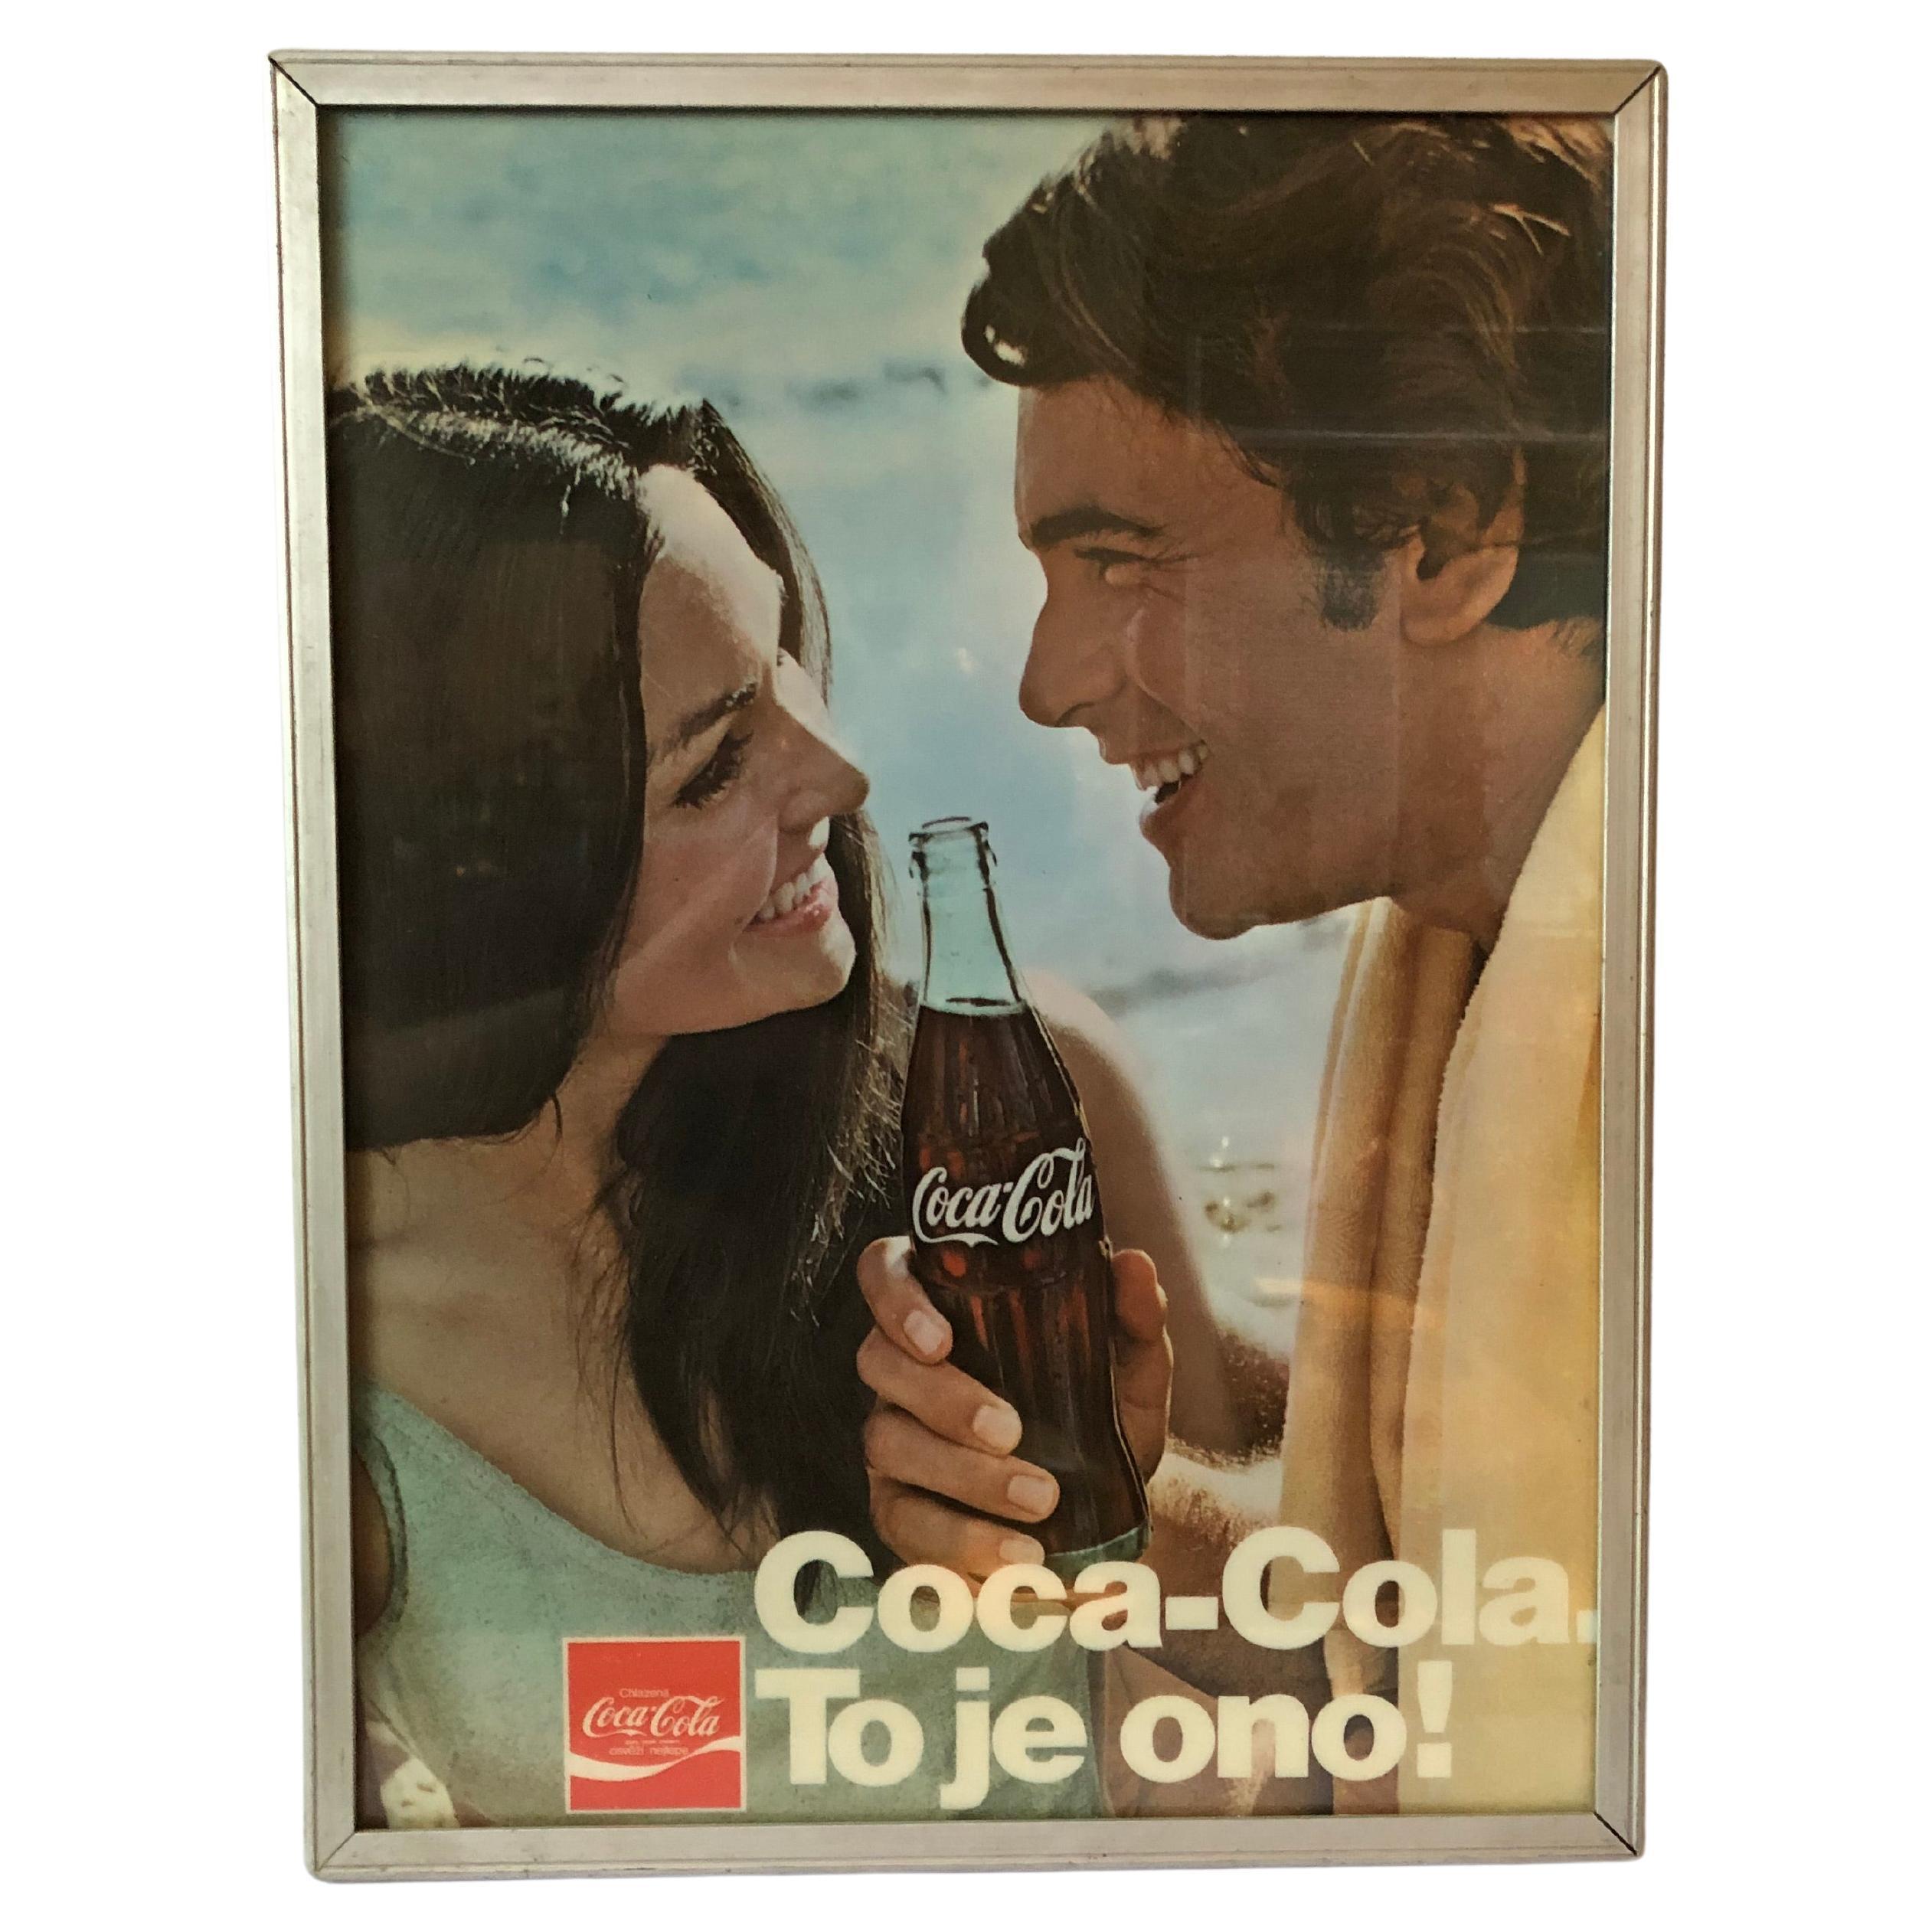 Beleuchtete Werbetafel von Coca-Cola, 80er Jahre, Tschechoslowakei